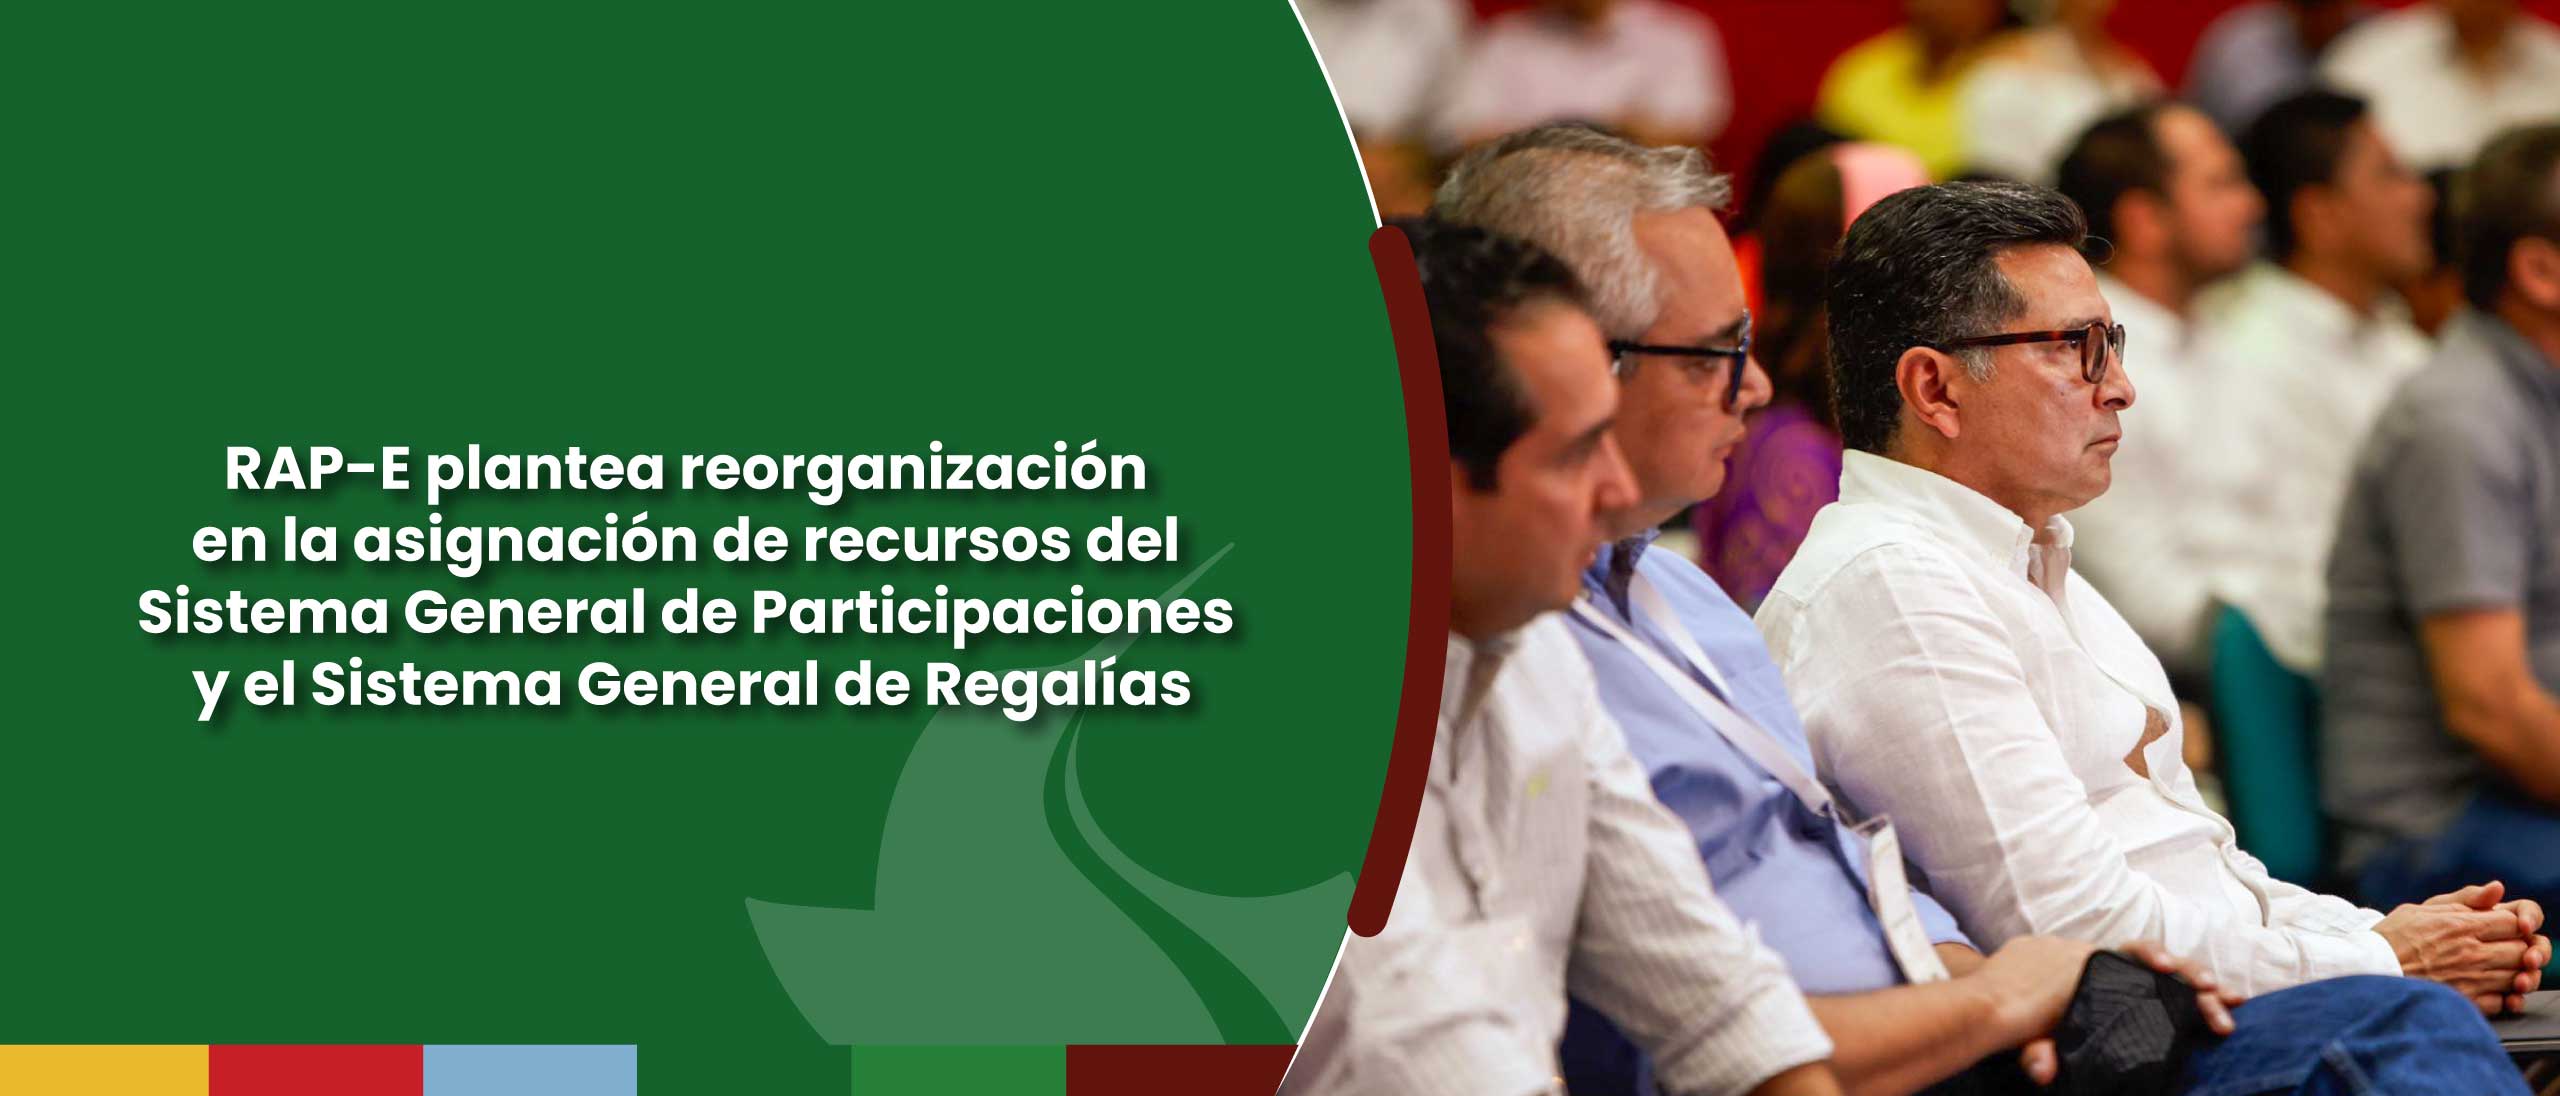 RAP-E plantea reorganización en la asignación de recursos del Sistema General de Participaciones y el Sistema General de Regalías